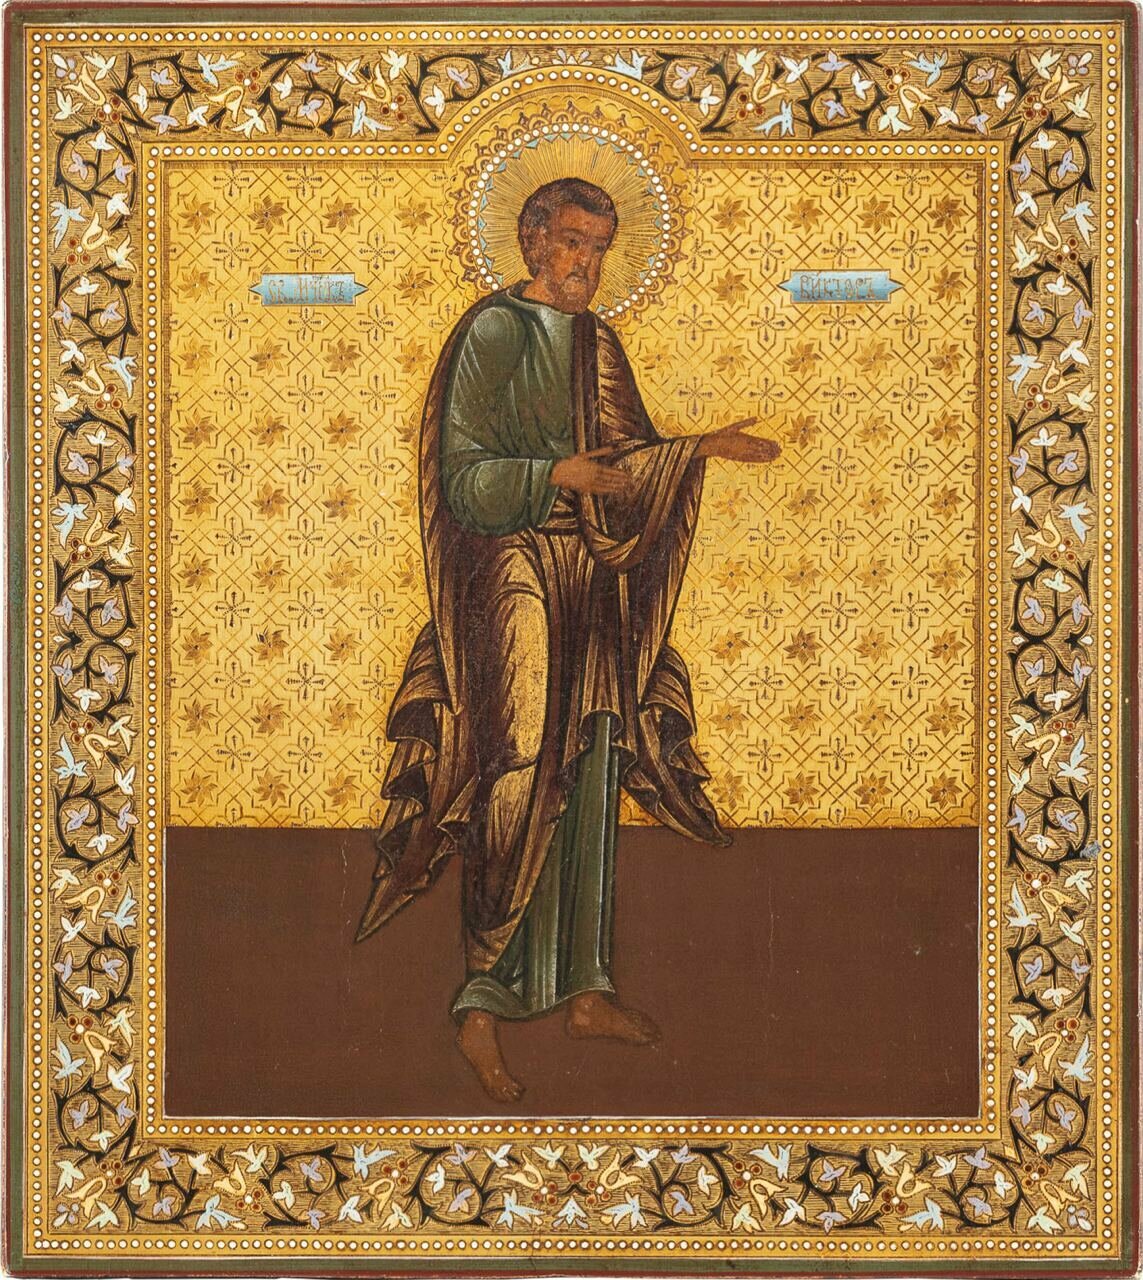 Икона святой Виктор деревянная икона ручной работы на левкасе 13 см